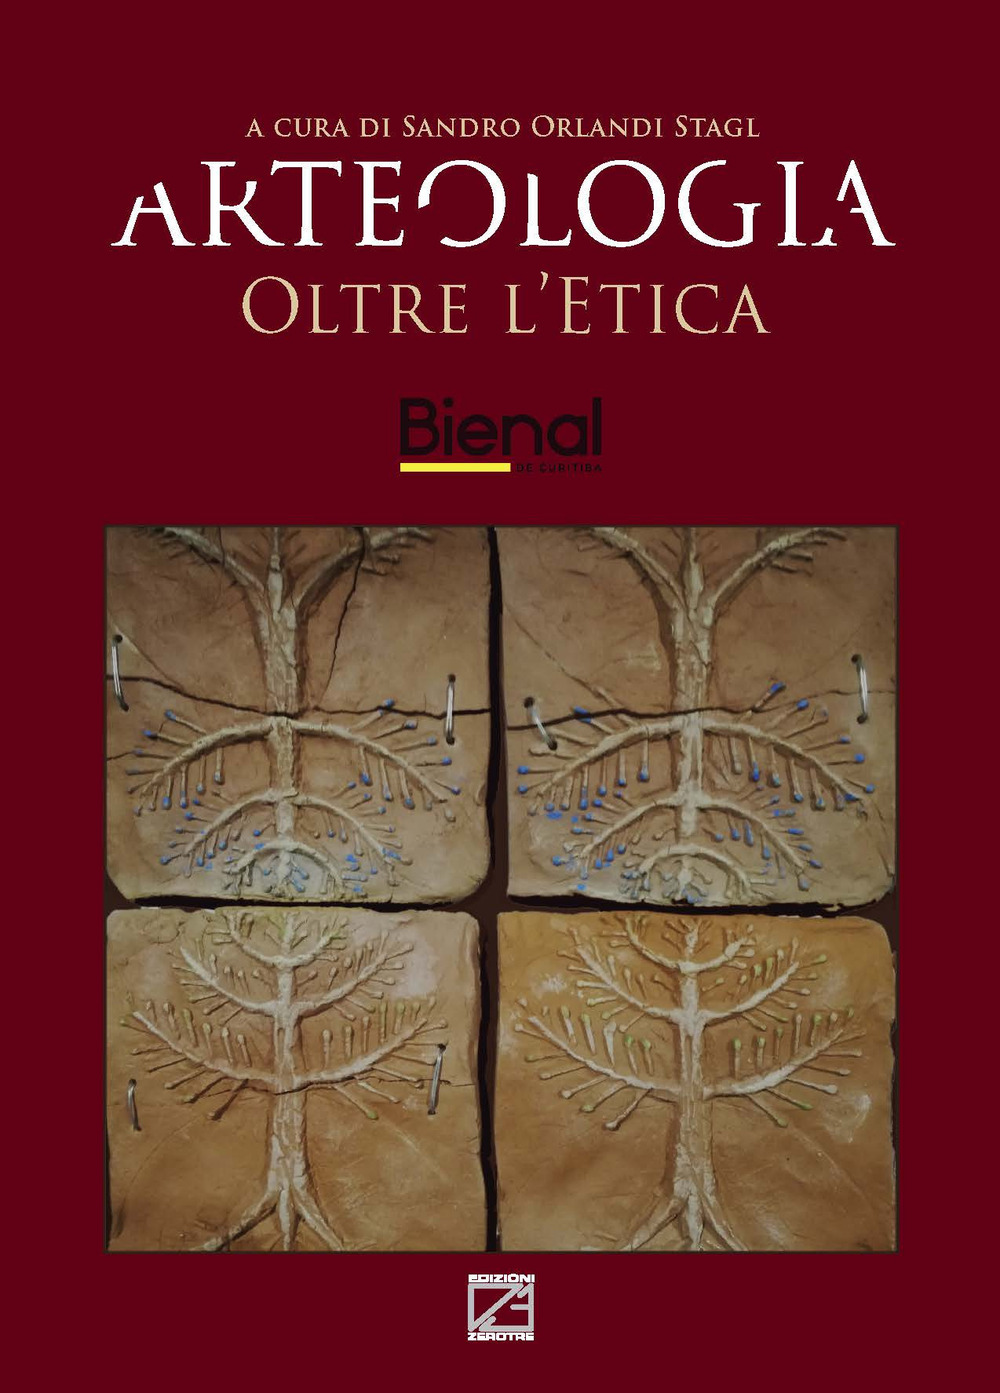 Arteologia. Oltre l'etica. L'arte etica in dialogo fra passato e futuro. Ediz. illustrata